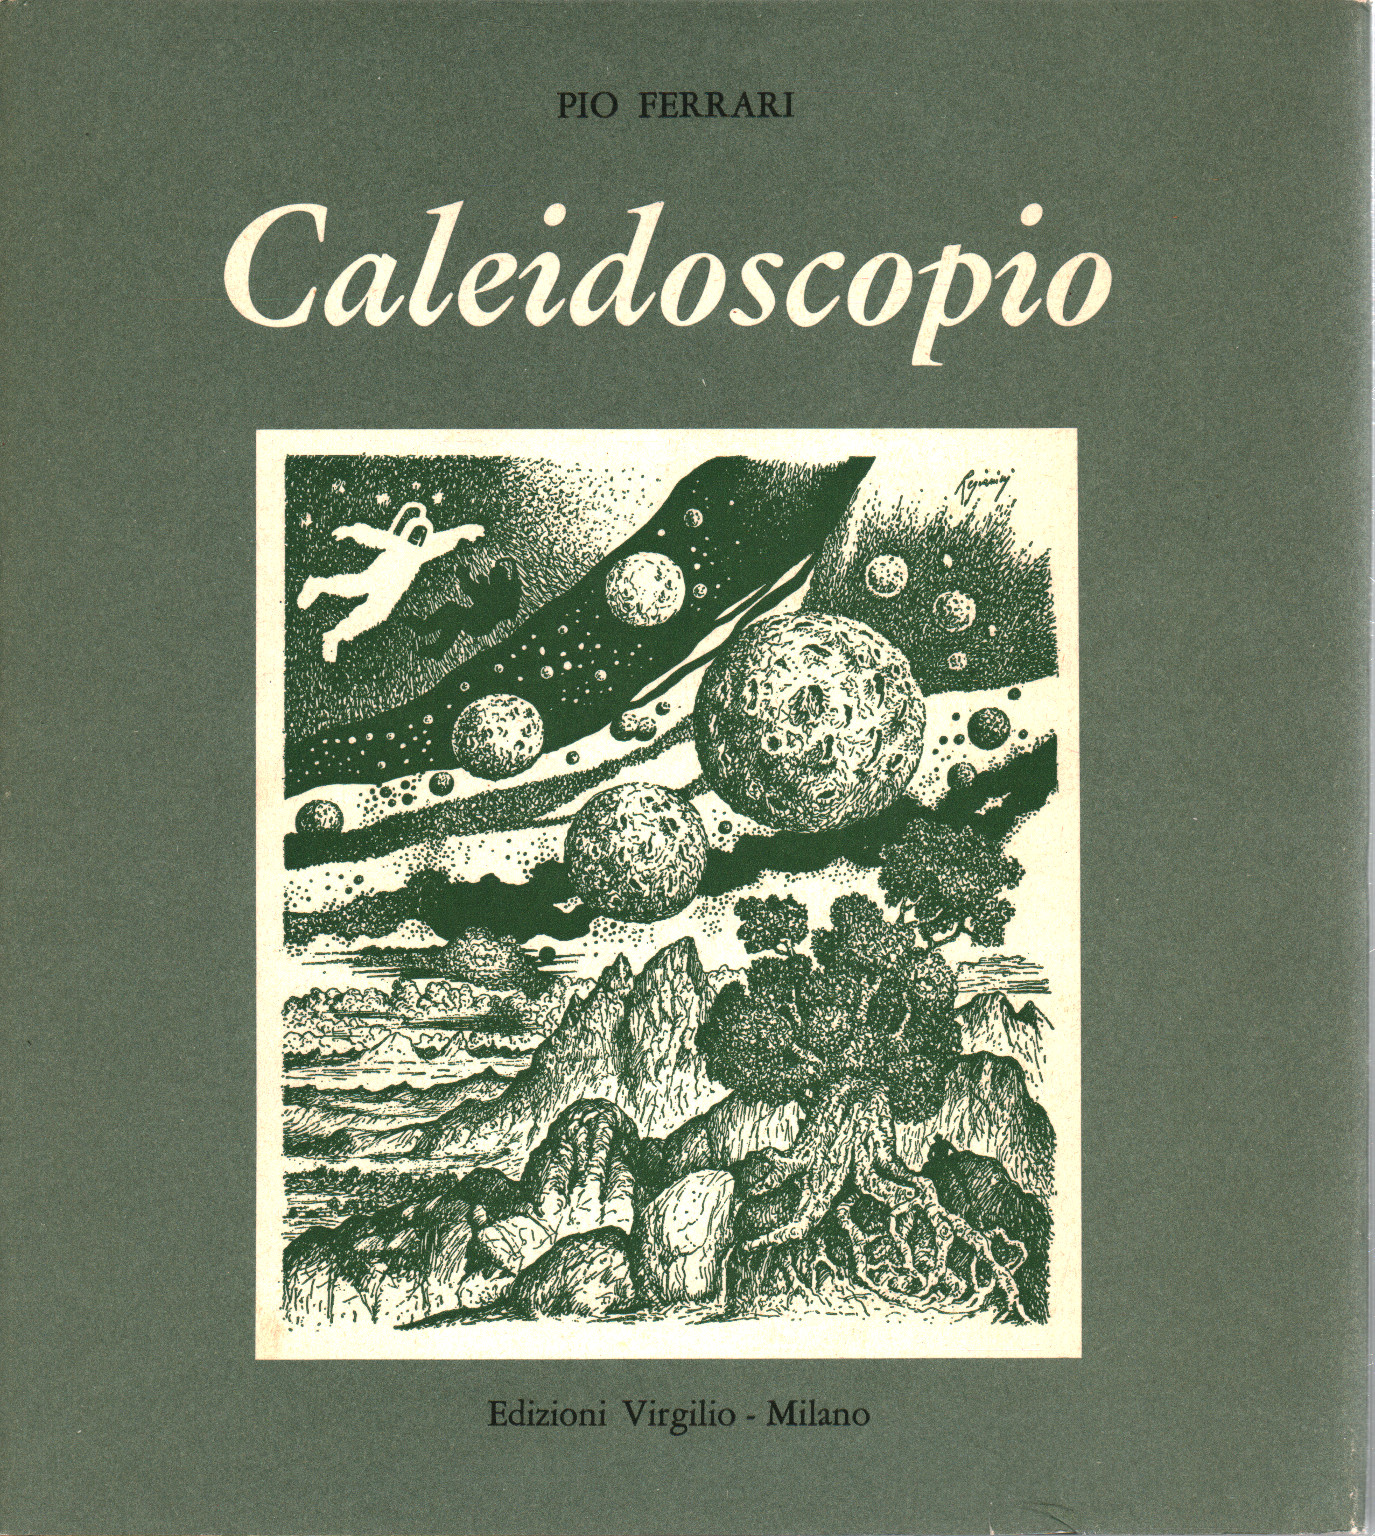 Caleidoscopio, s.a.